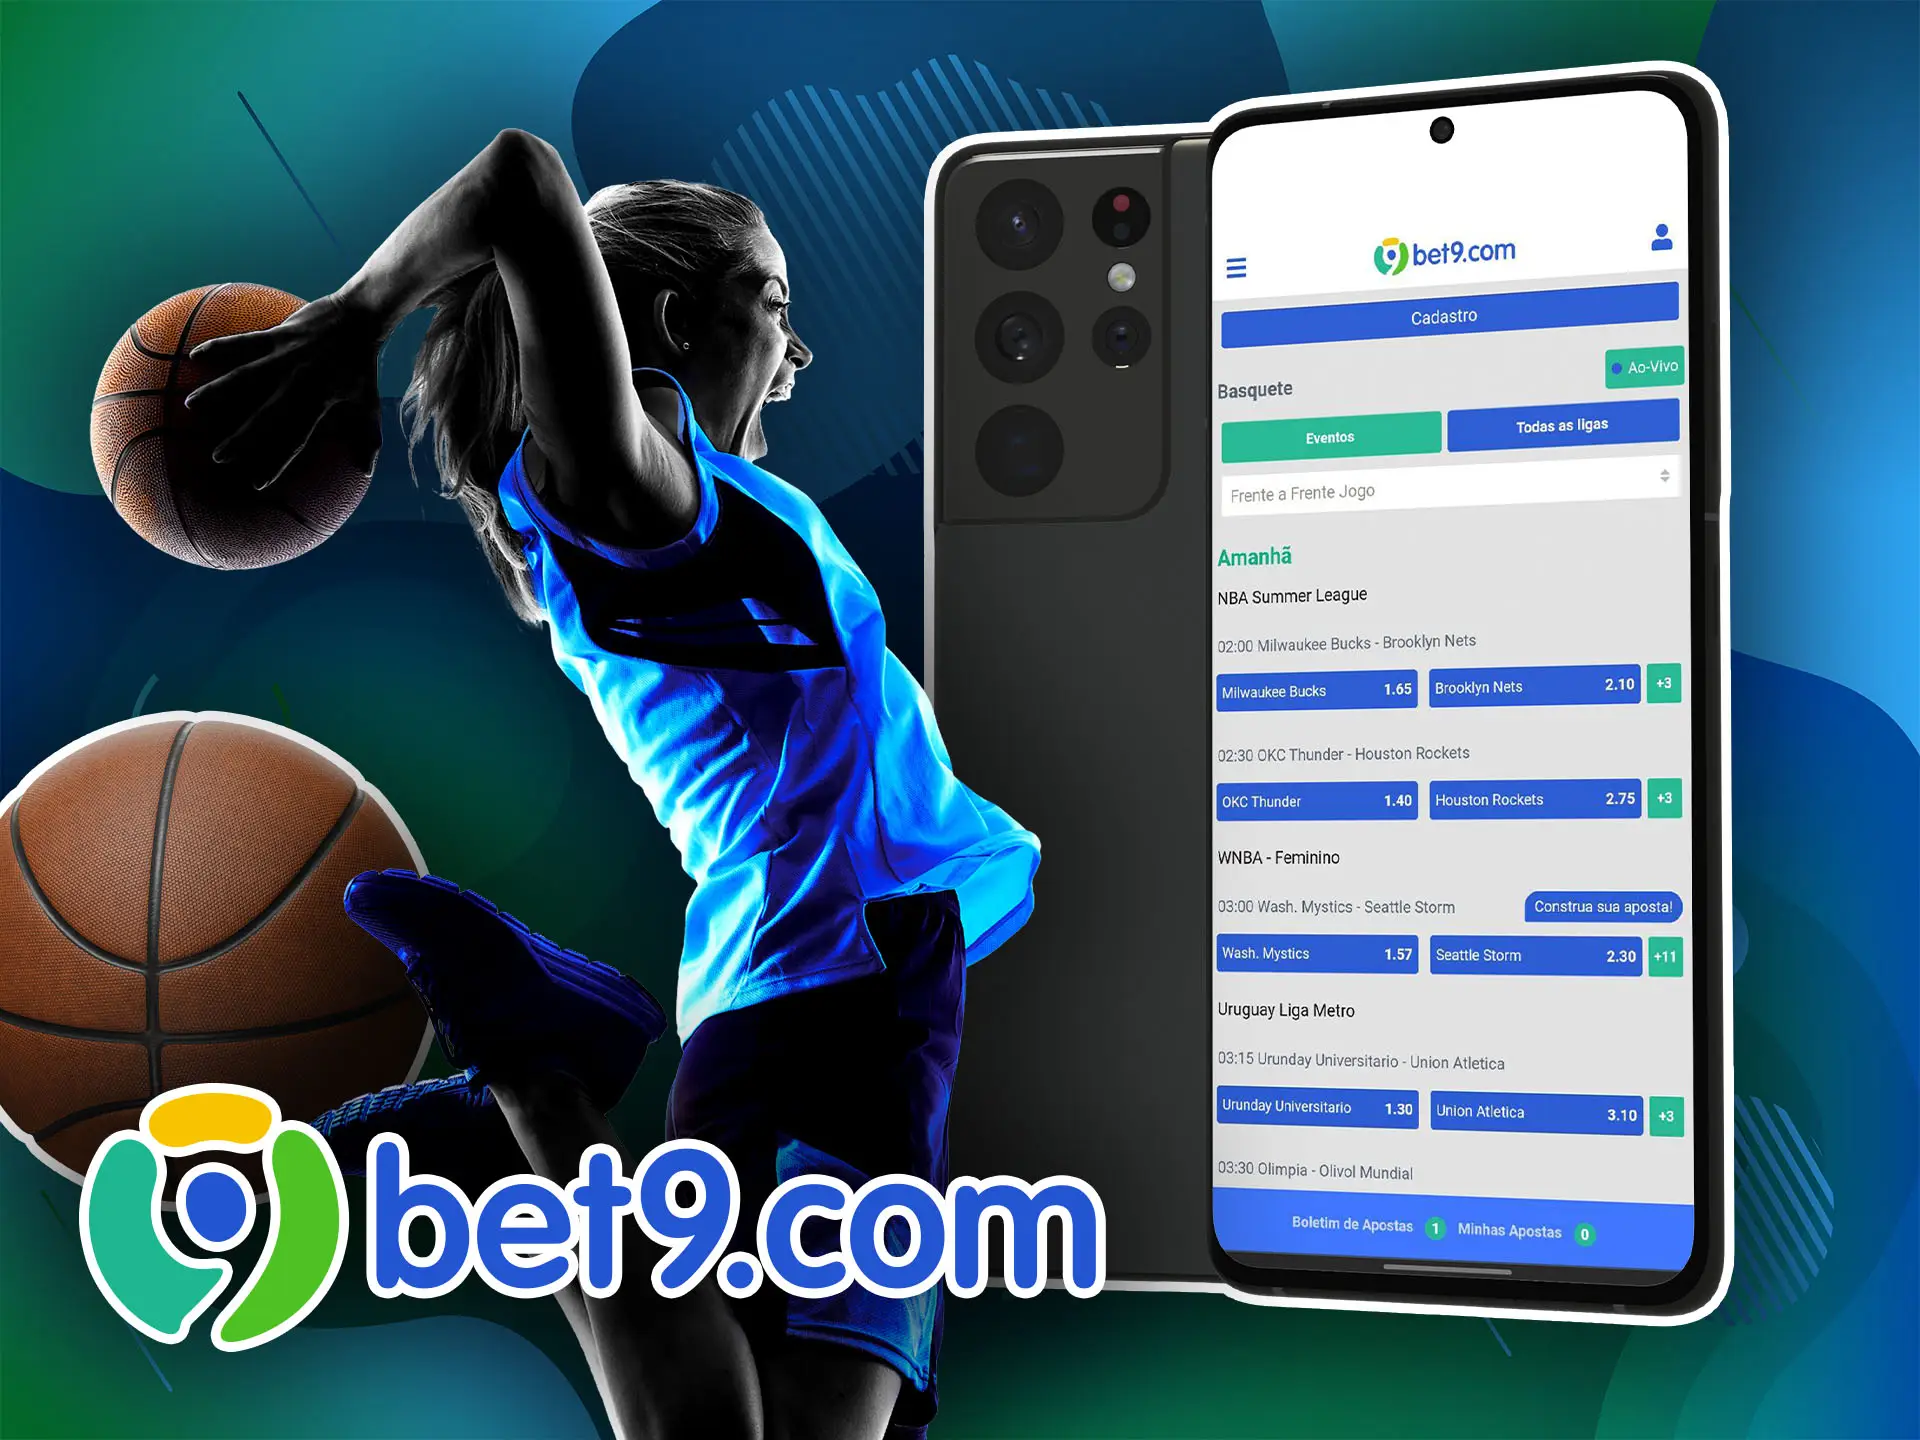 Escolha seu jogador de basquete favorito e aposte nele para ganhar a partida por meio do aplicativo Bet9.